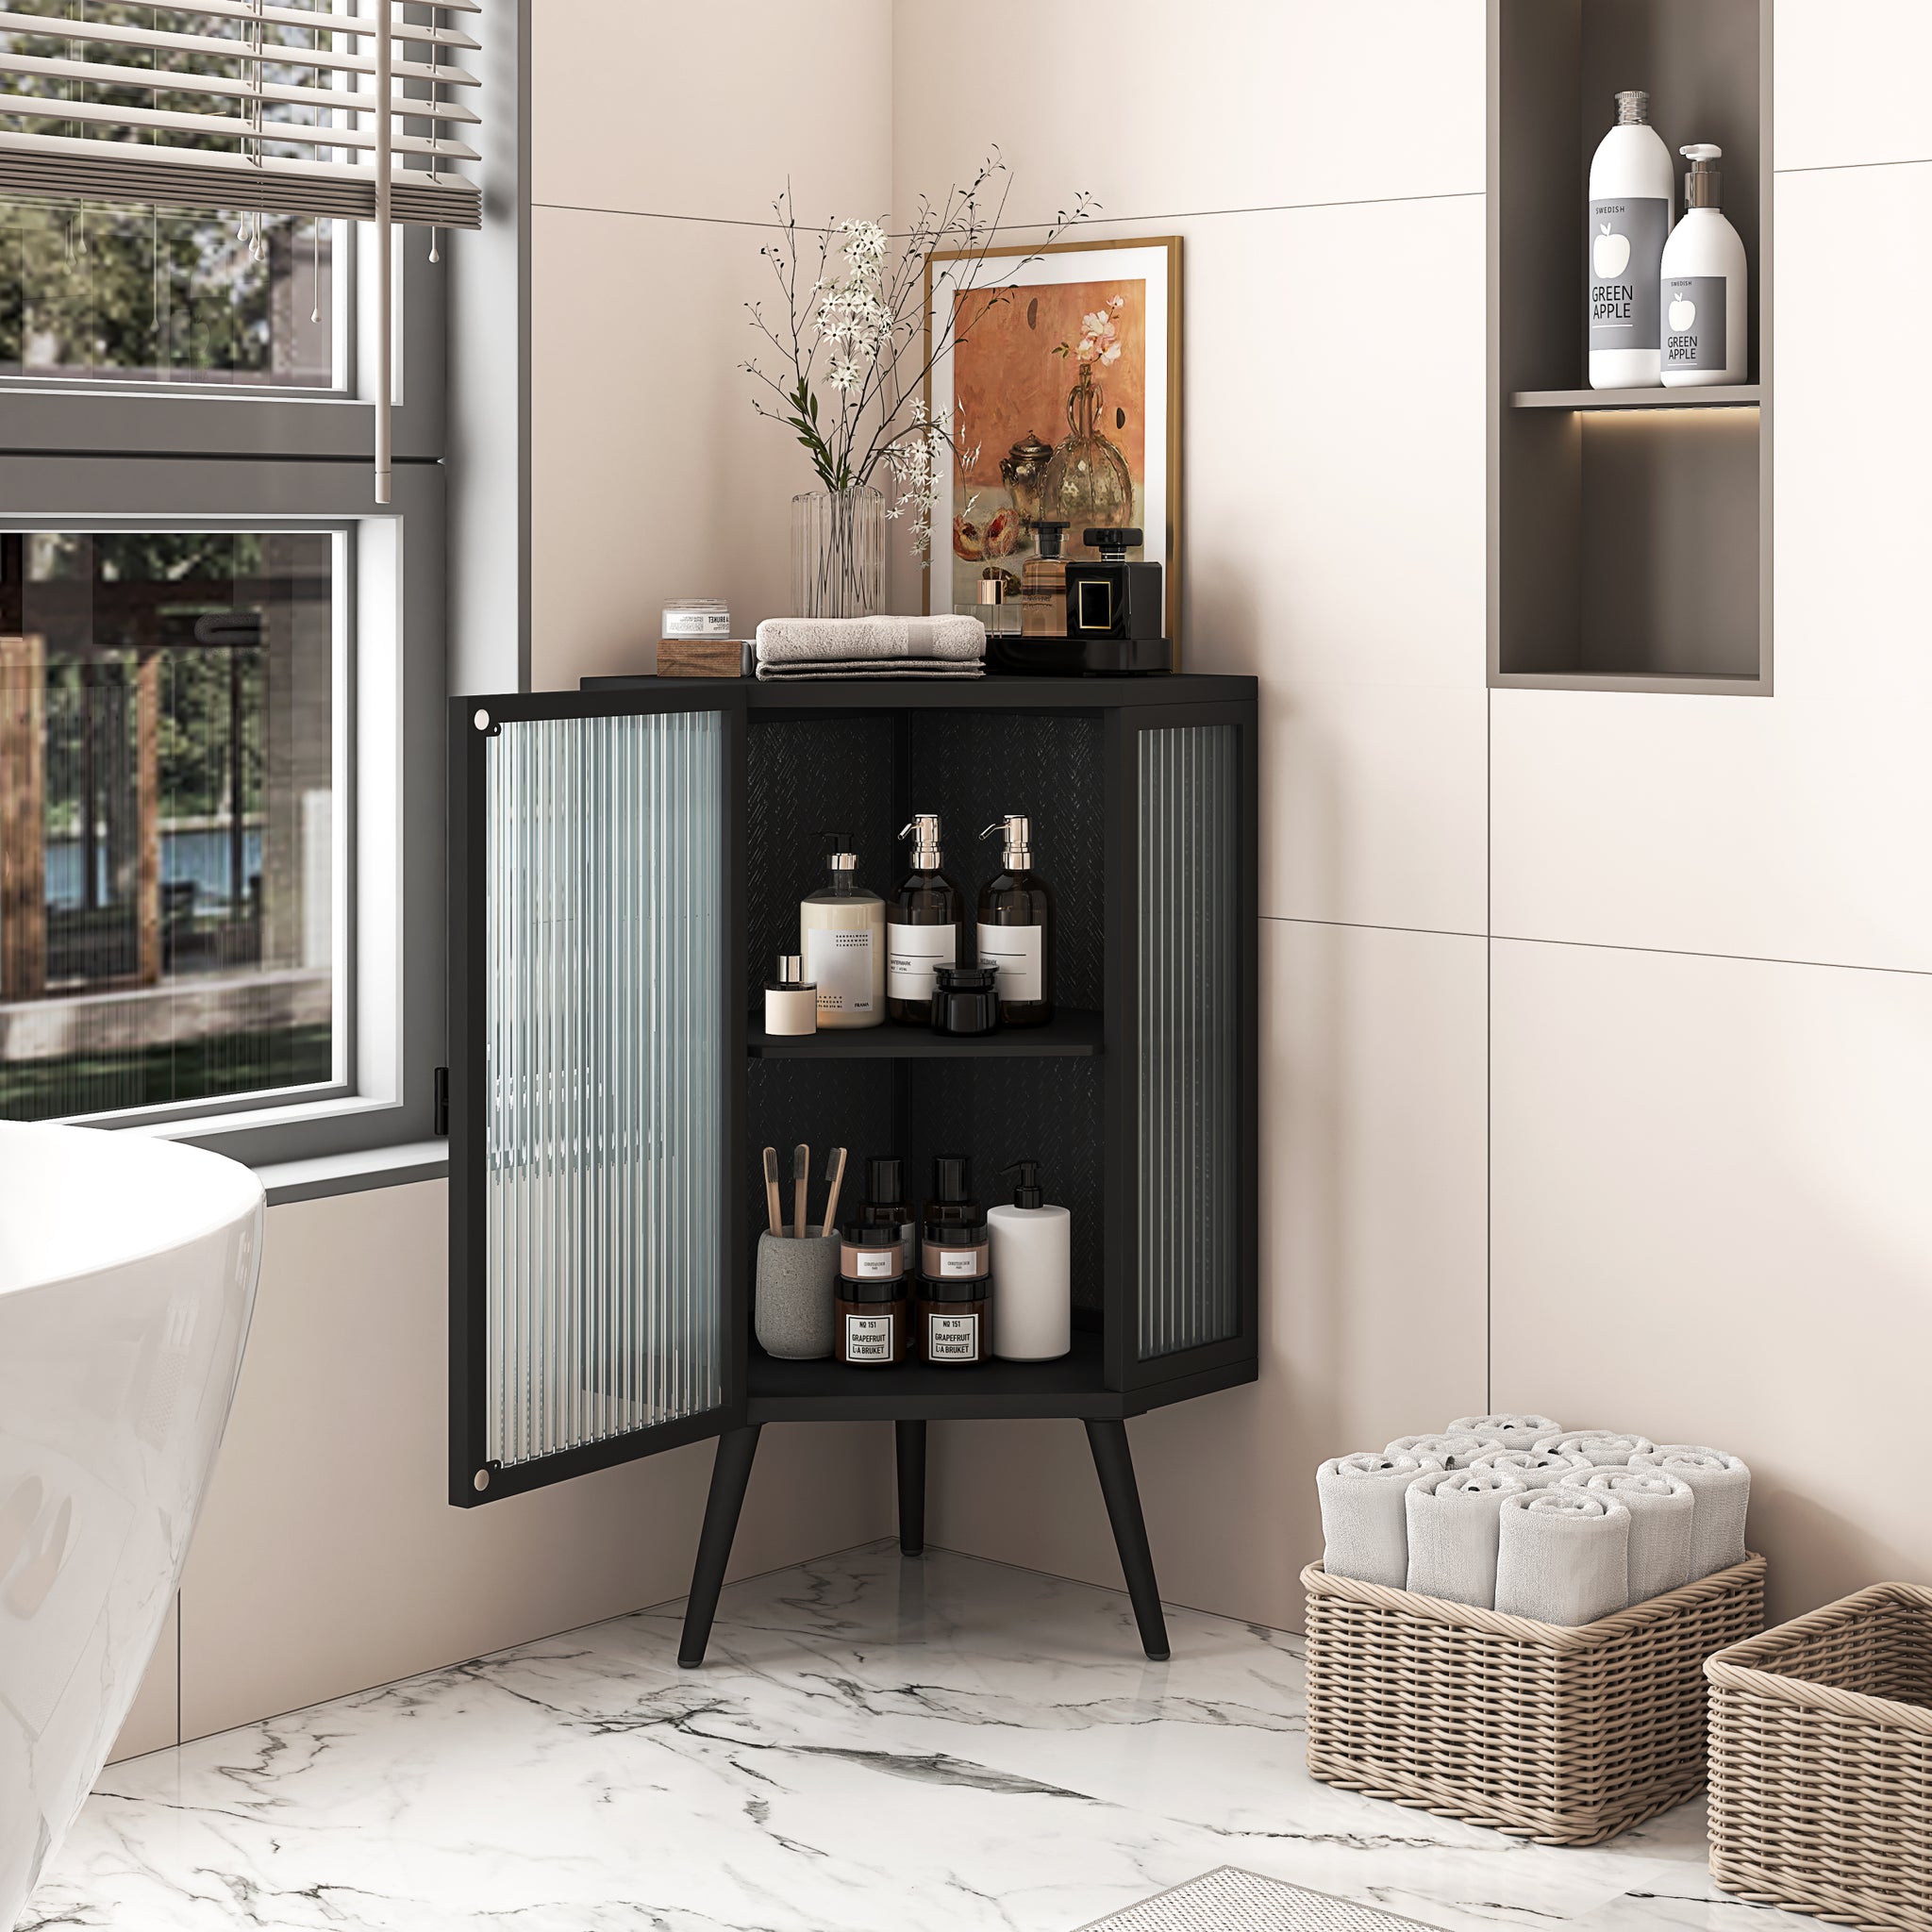 22.25" Floor Coner Cabinet with Tempered Glass Door & black-glass+metal